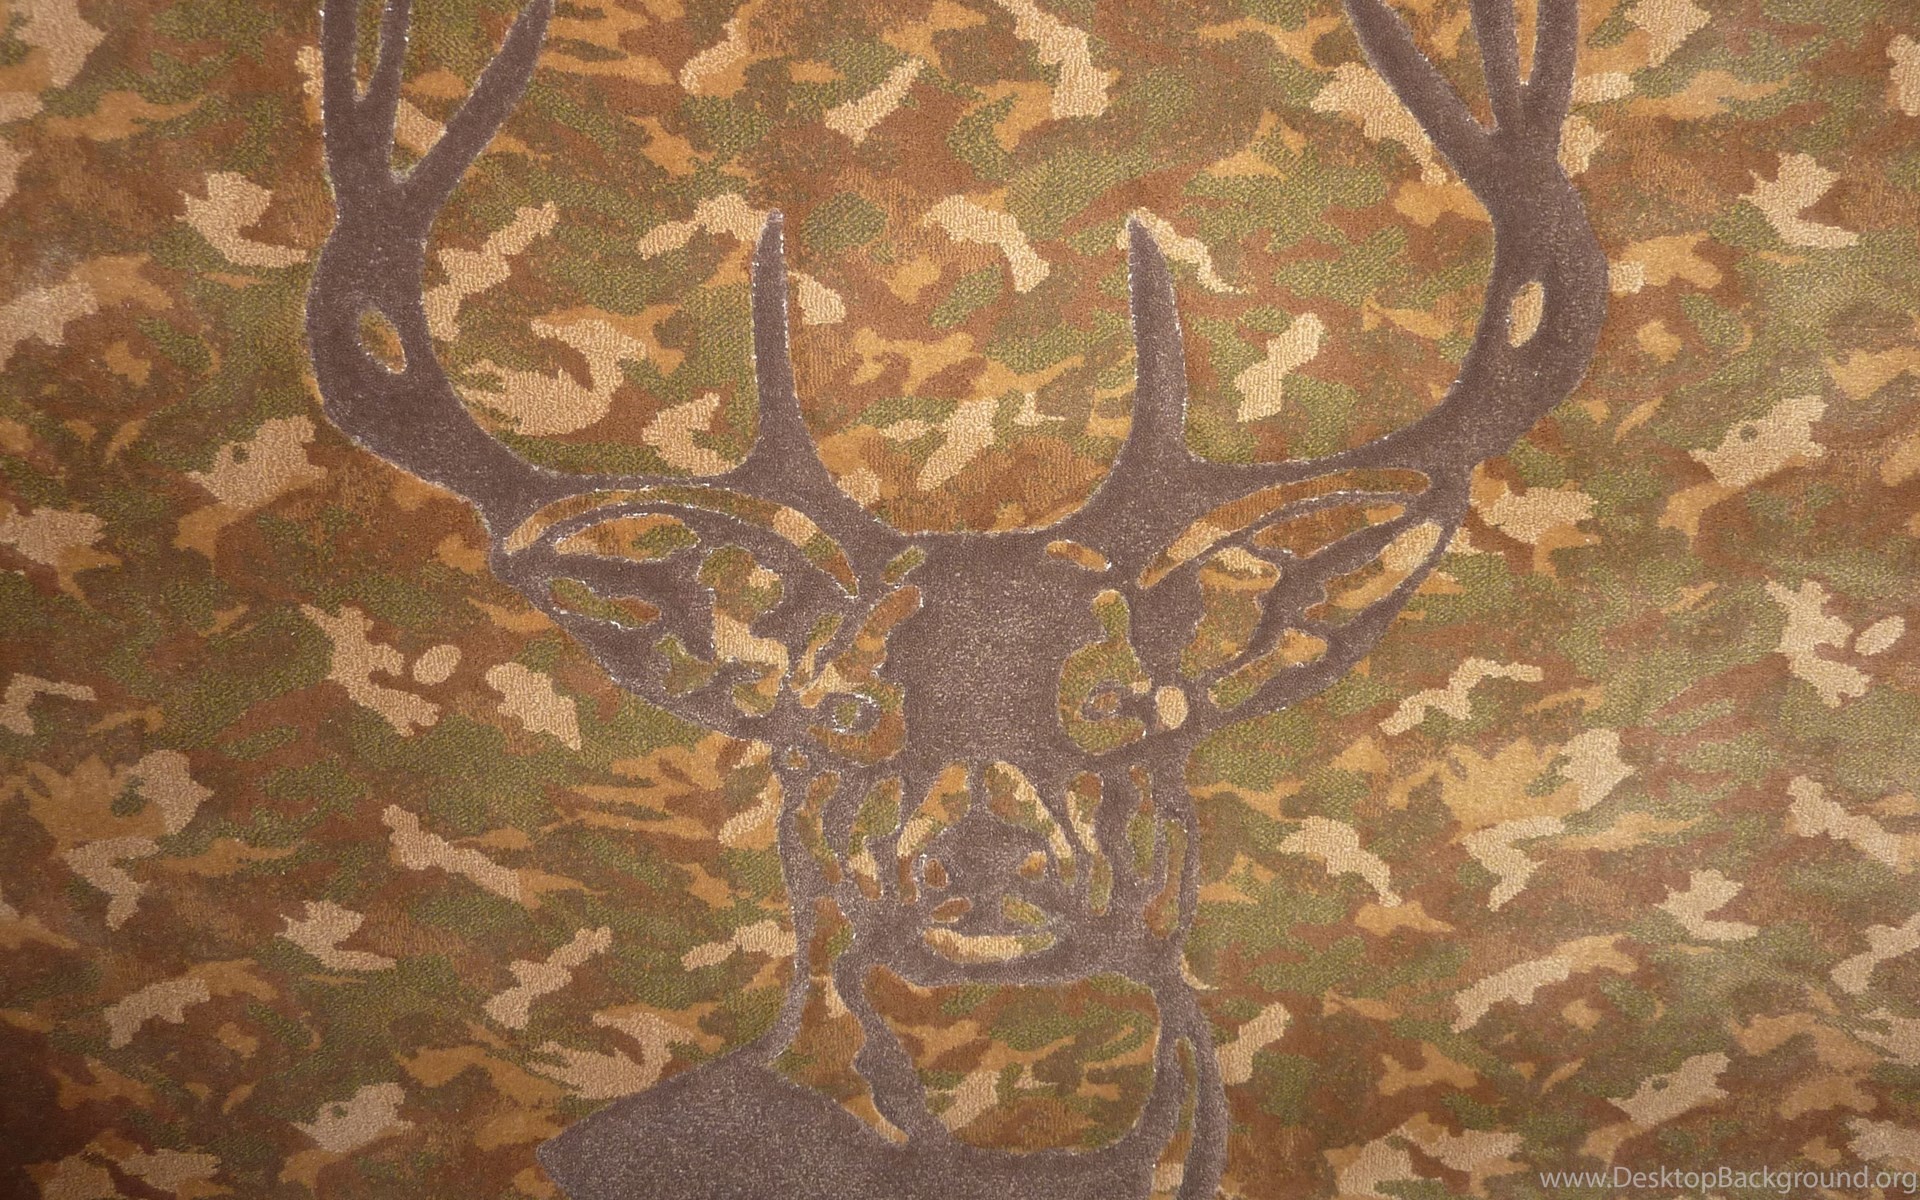 1920x1200 ... camo deer wallpaper cool bow deer wallpapers deer camo desktop  background ...